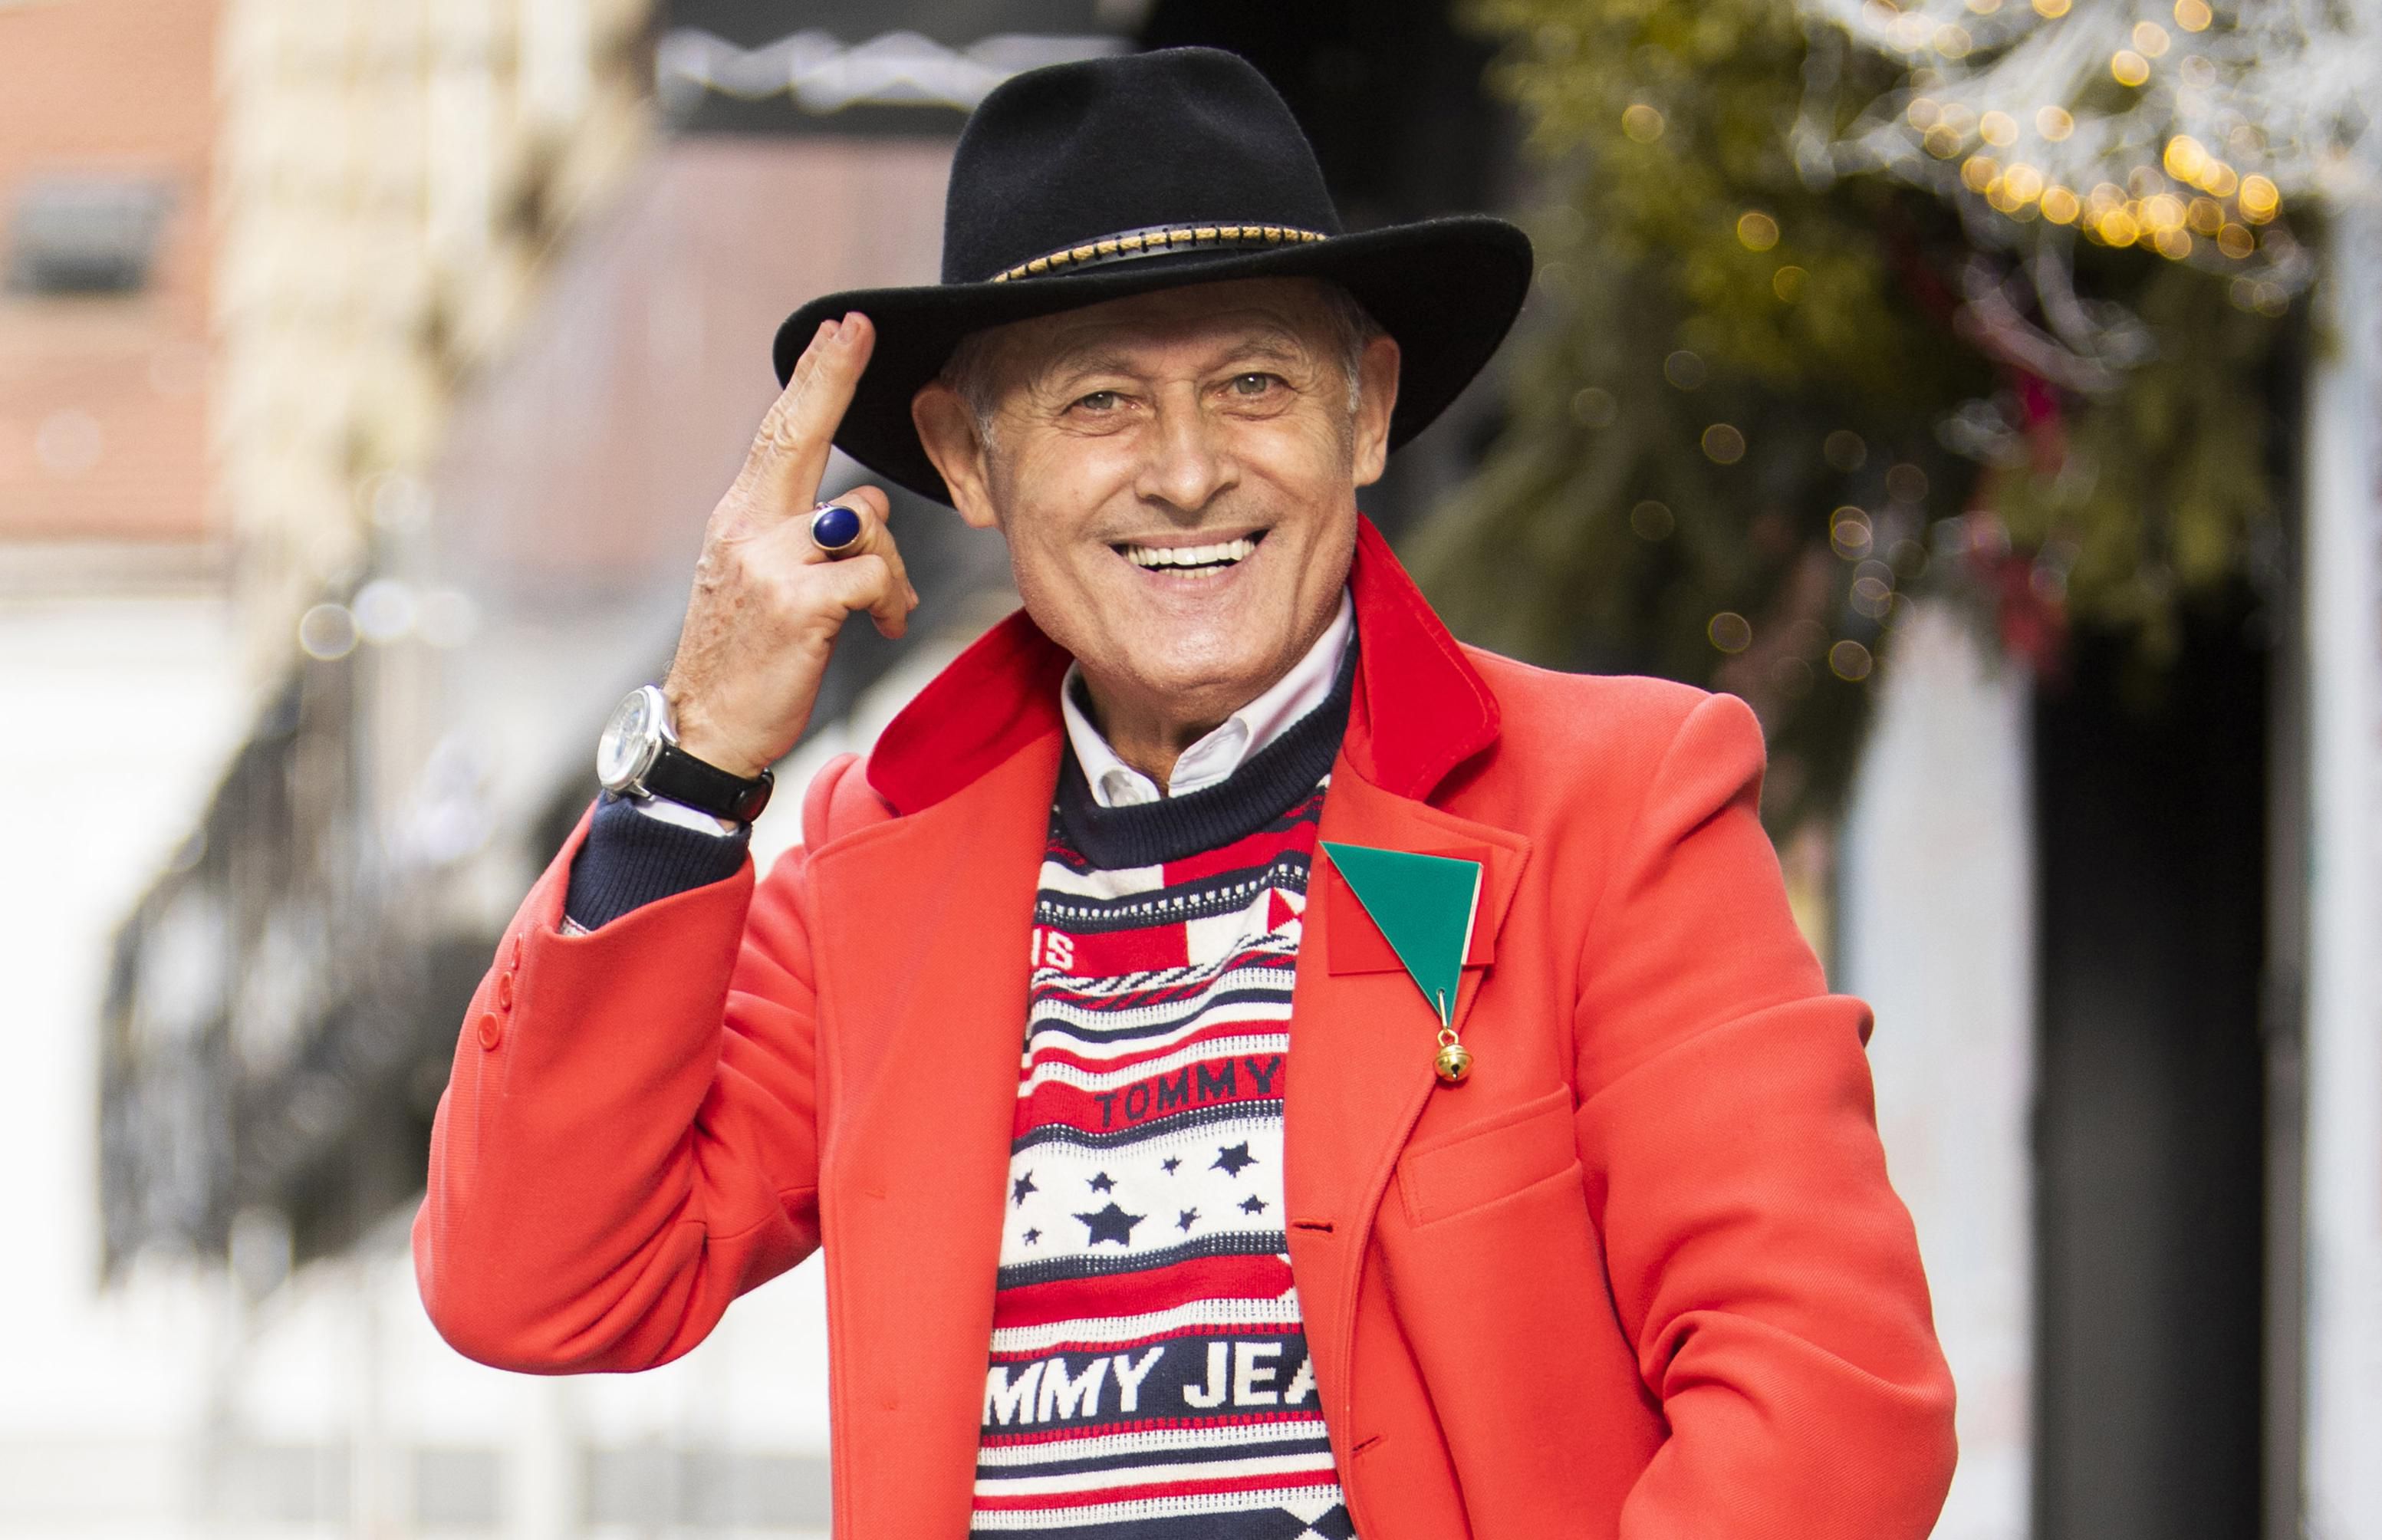 Crveni kaput, "ružni" džemper i upečatljive čarape: Gospodinov outfit pravo je osvježenje na zagrebačkim ulicama